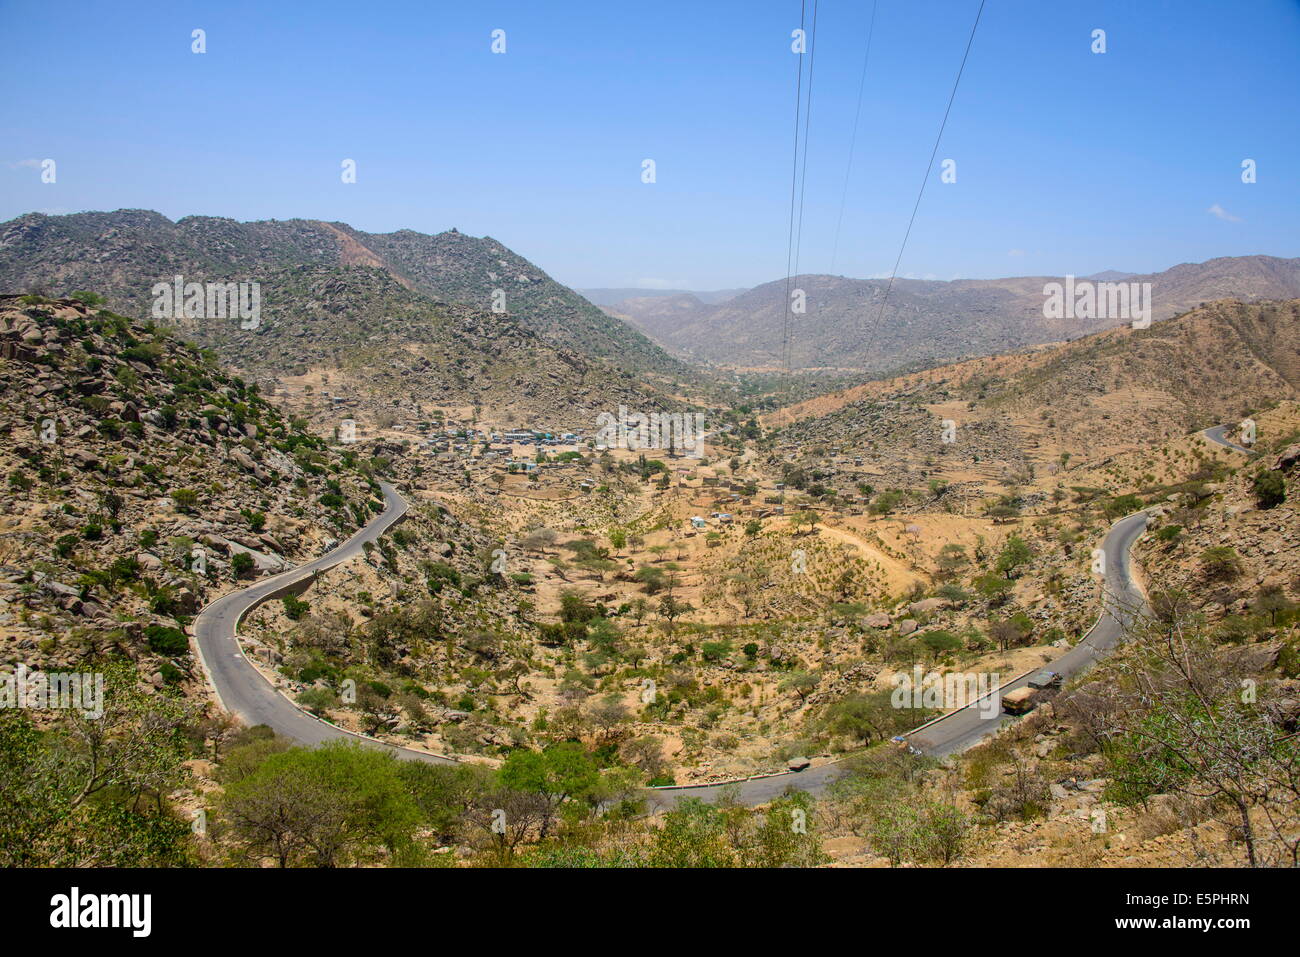 The highlands of Eritrea near Keren, Eritrea, Africa Stock Photo